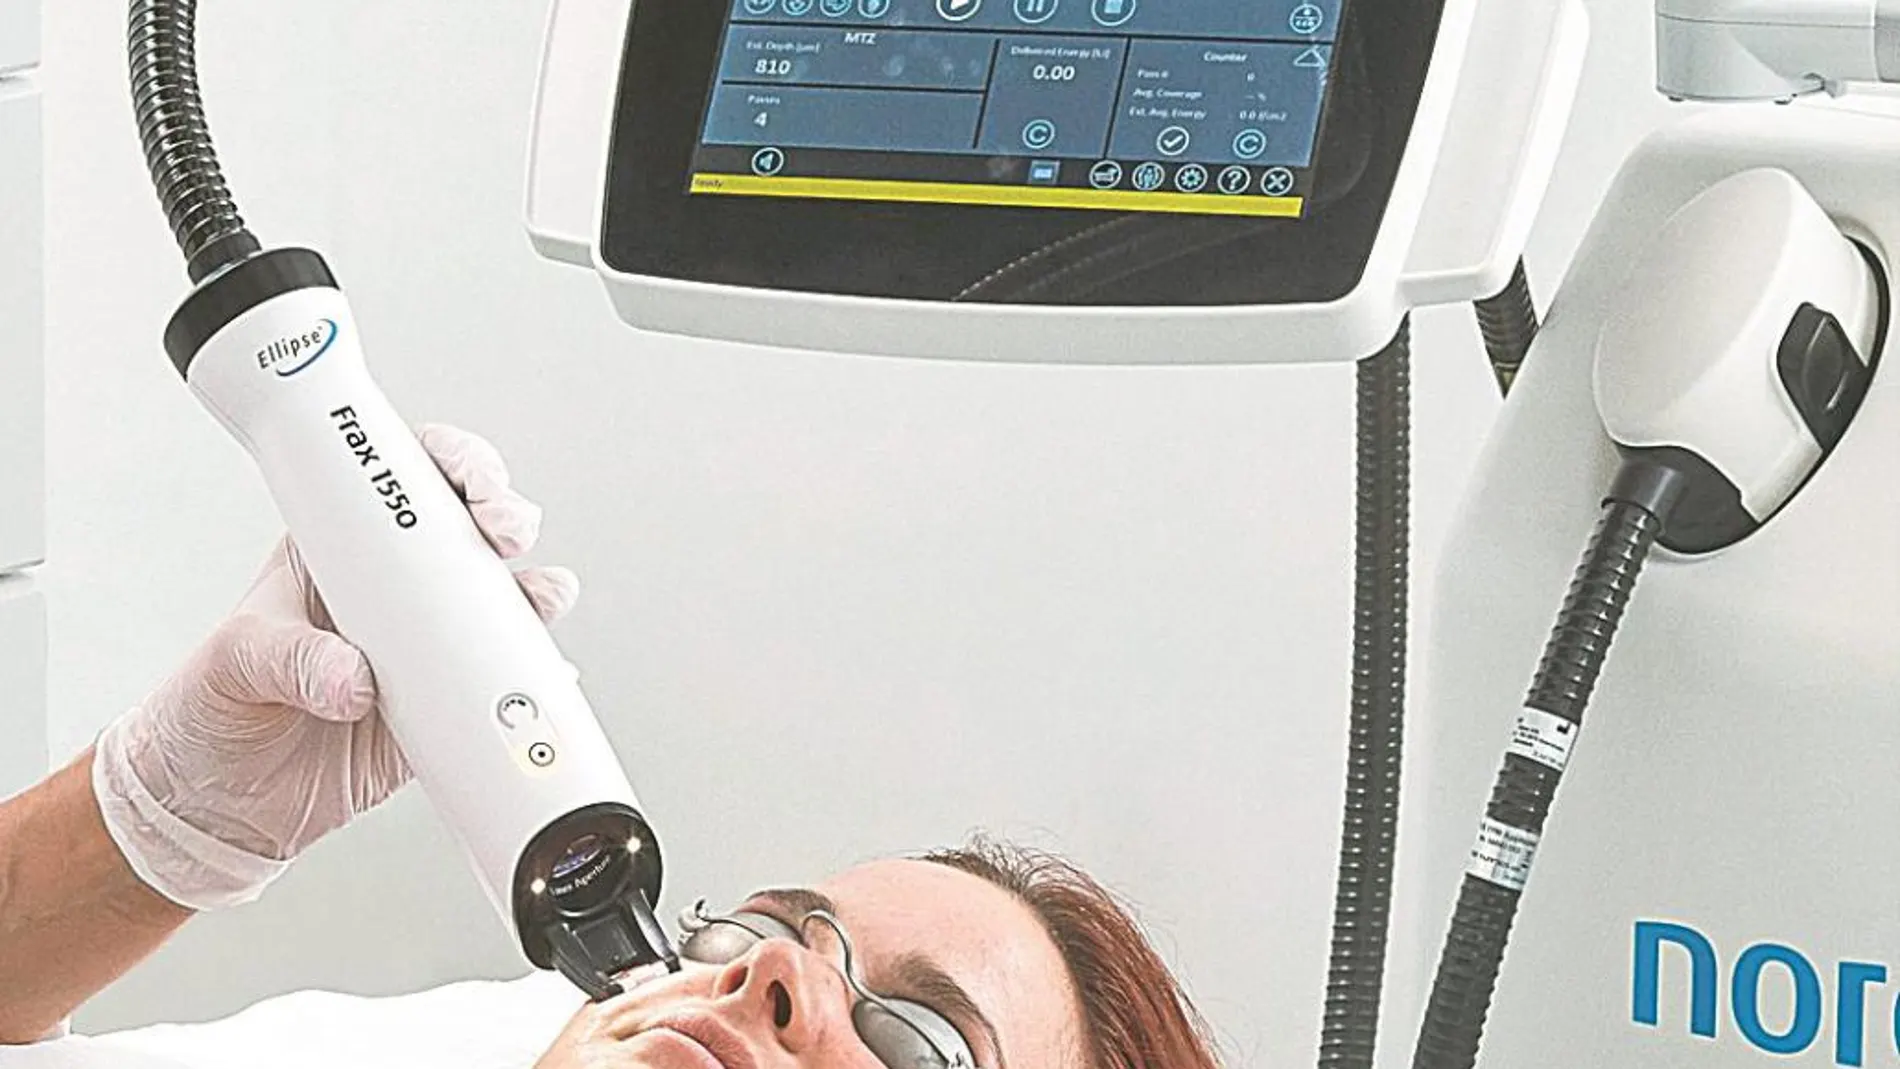 La nueva unidad cuenta con tecnología avanzada para cuidar la piel desde el punto de vista médico y estético